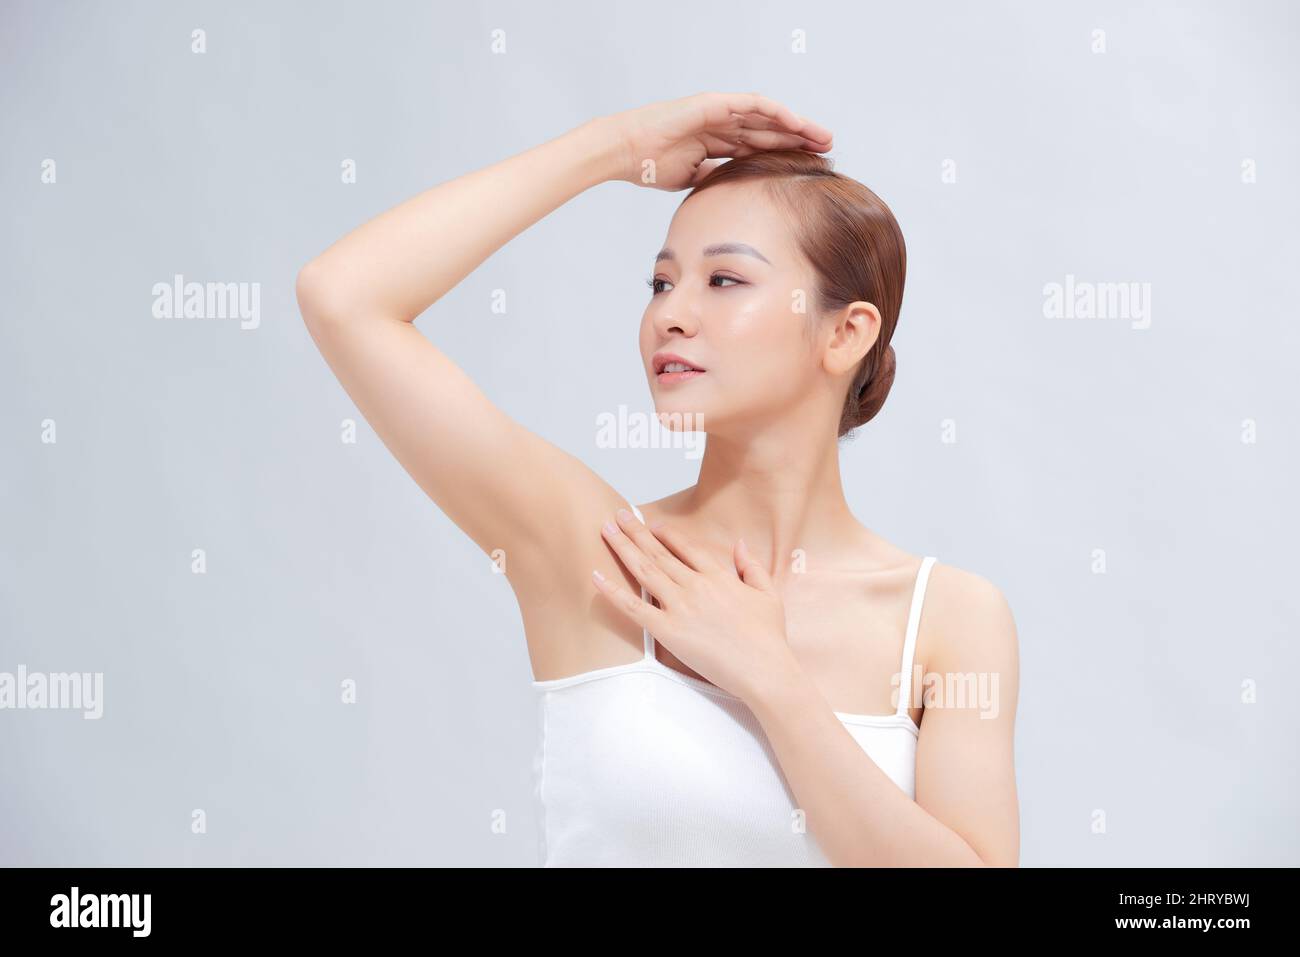 Schöne junge asiatische Frau, die die Hände hochhebt, um saubere und hygienische Achselhöhlen oder Achselhöhlen auf weißem Hintergrund zu zeigen Stockfoto